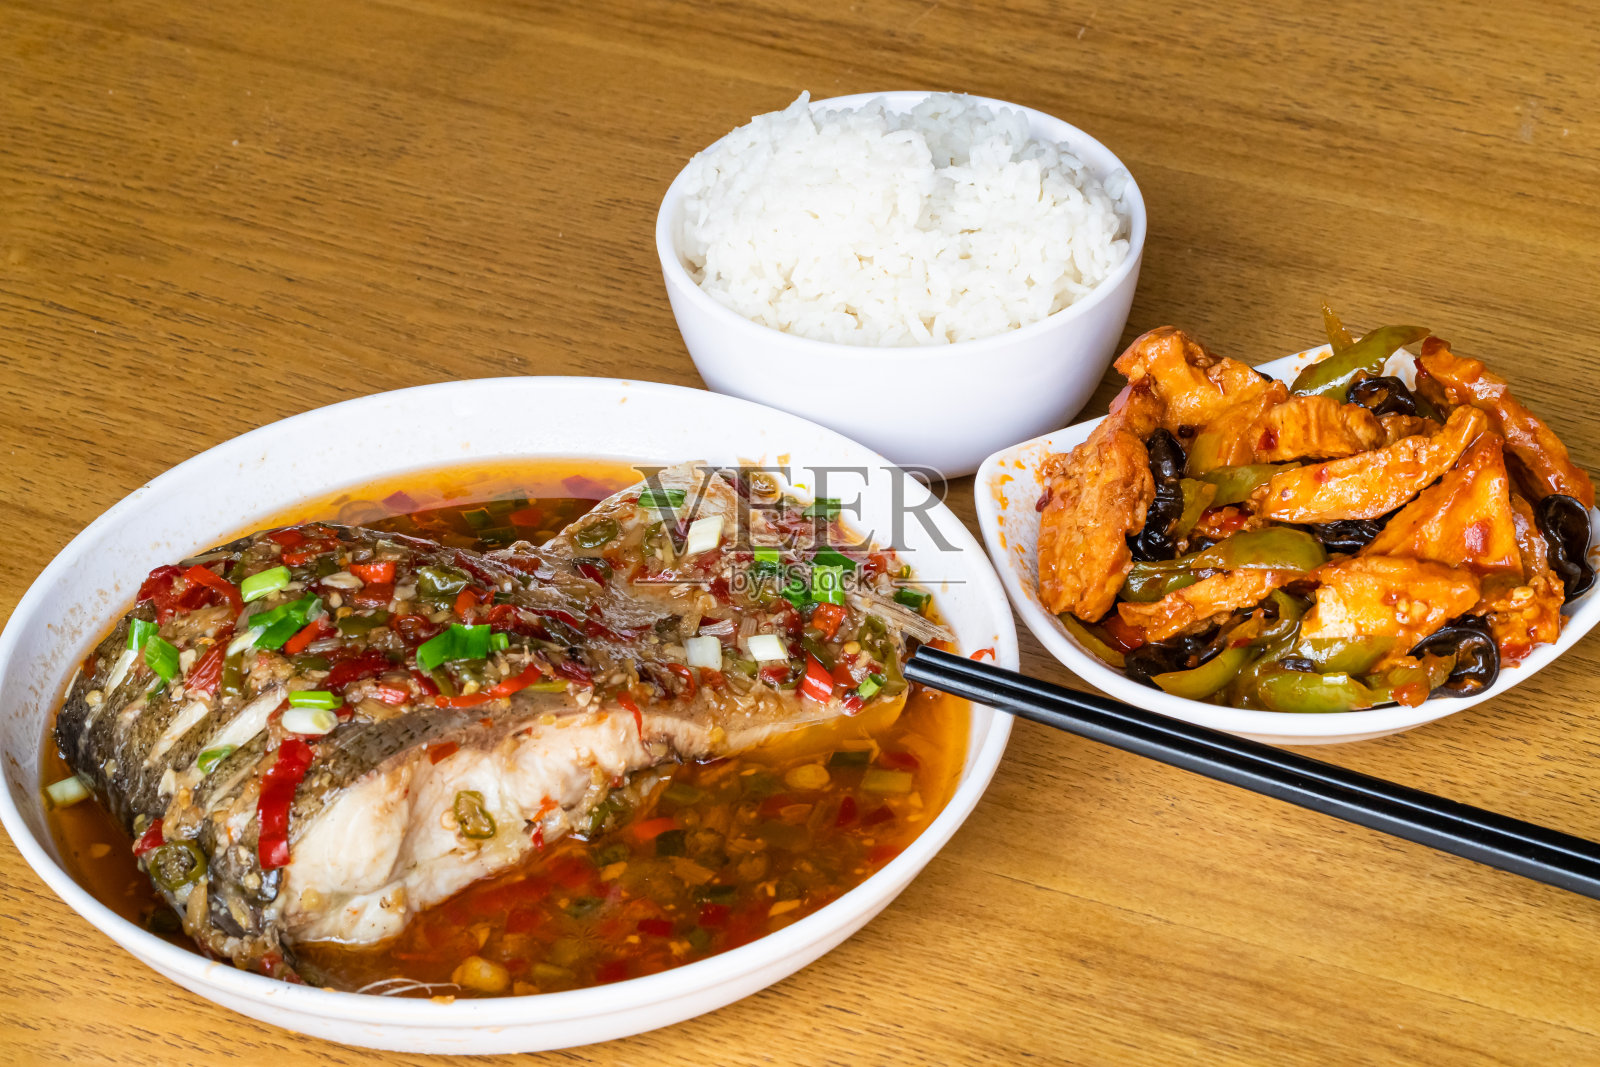 中餐是红椒清蒸鱼、炒豆腐，主食是米饭照片摄影图片